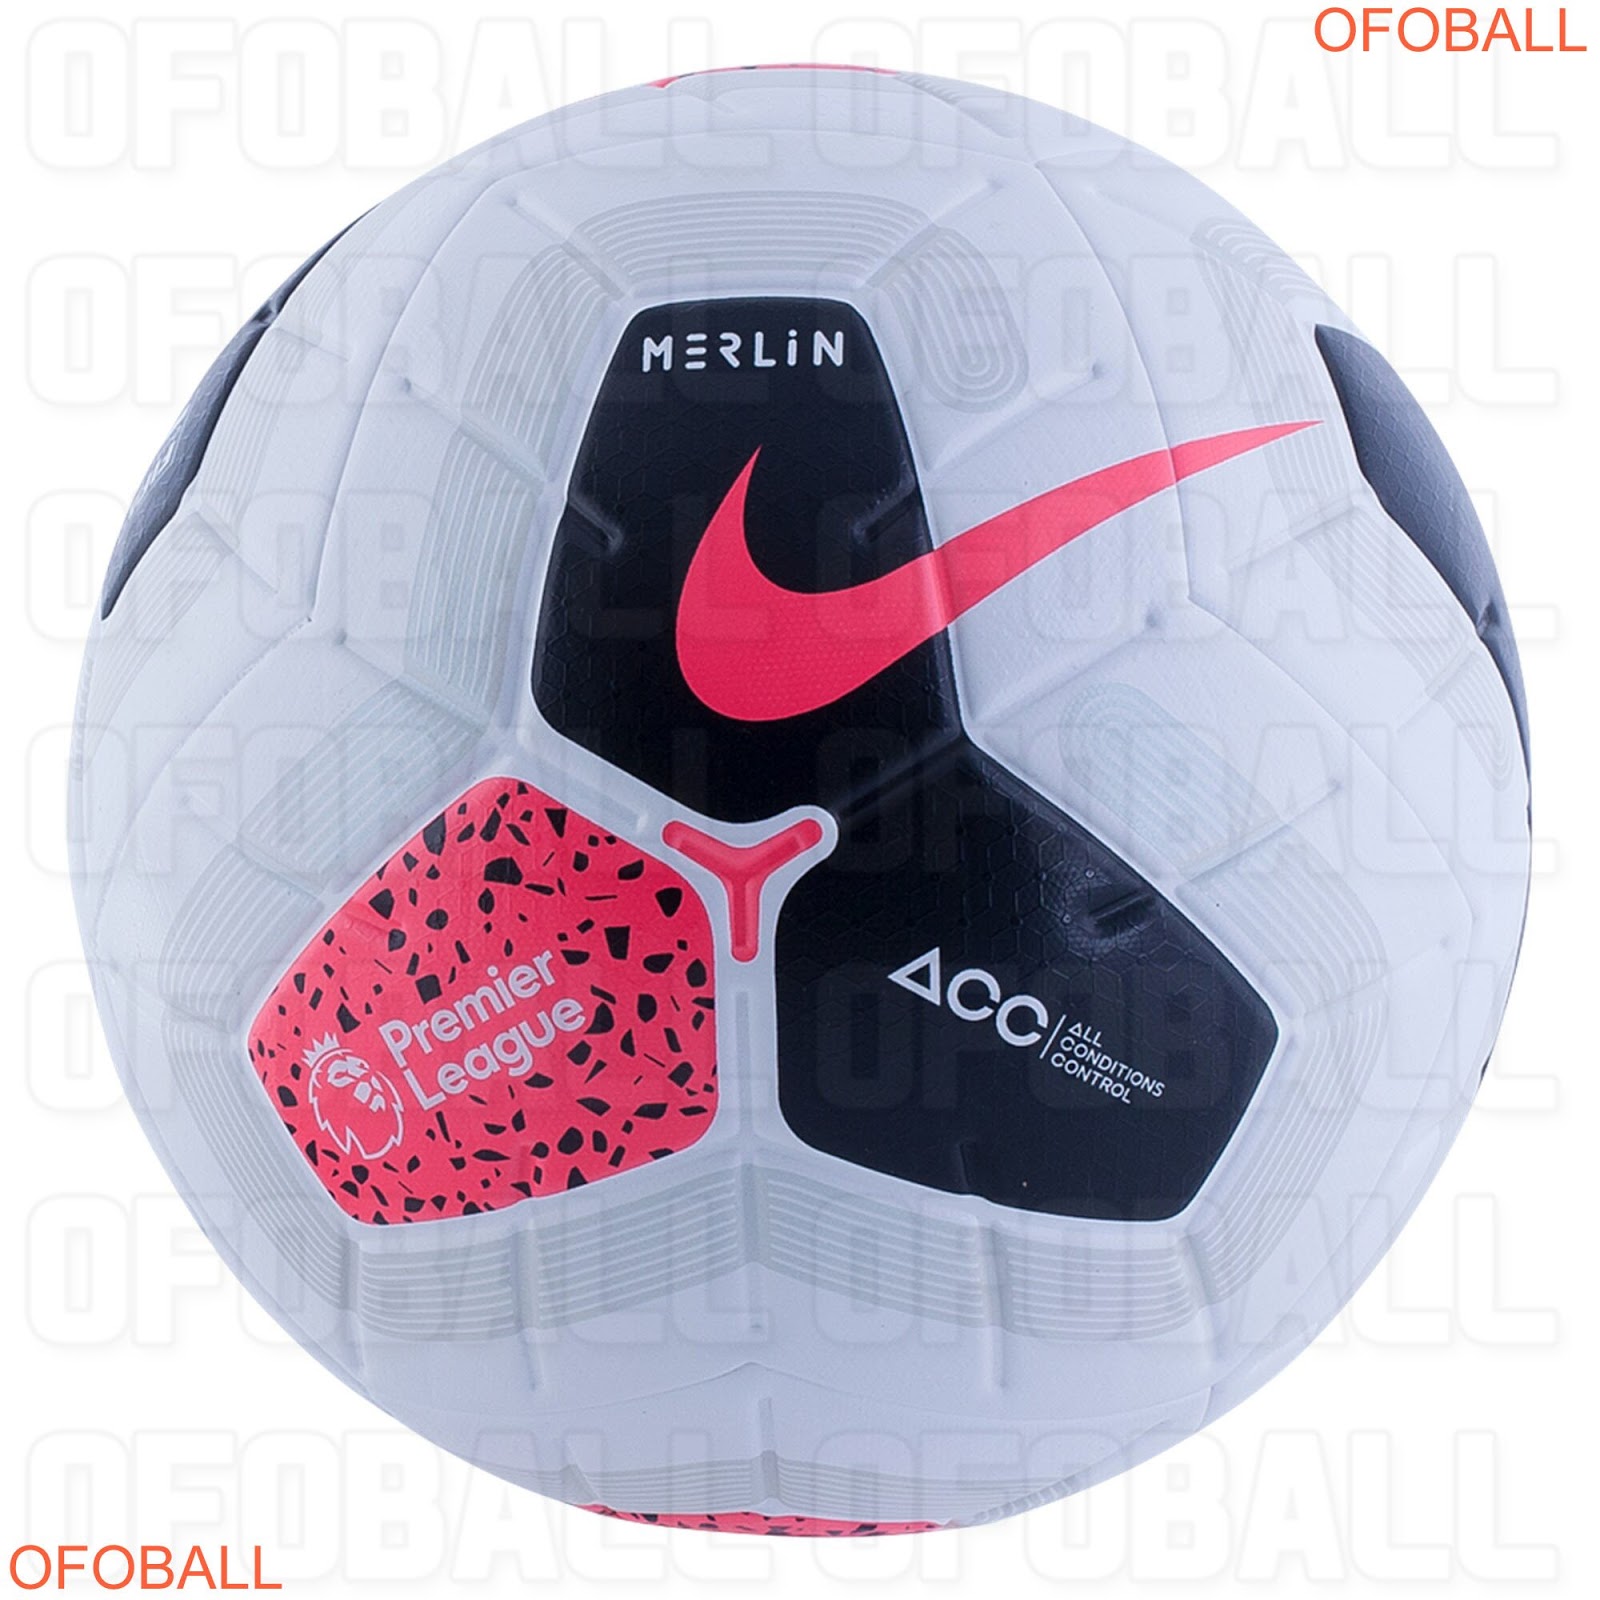 Nike Merlin Premier League 19-20 Ball Leaked - Footy Headlines